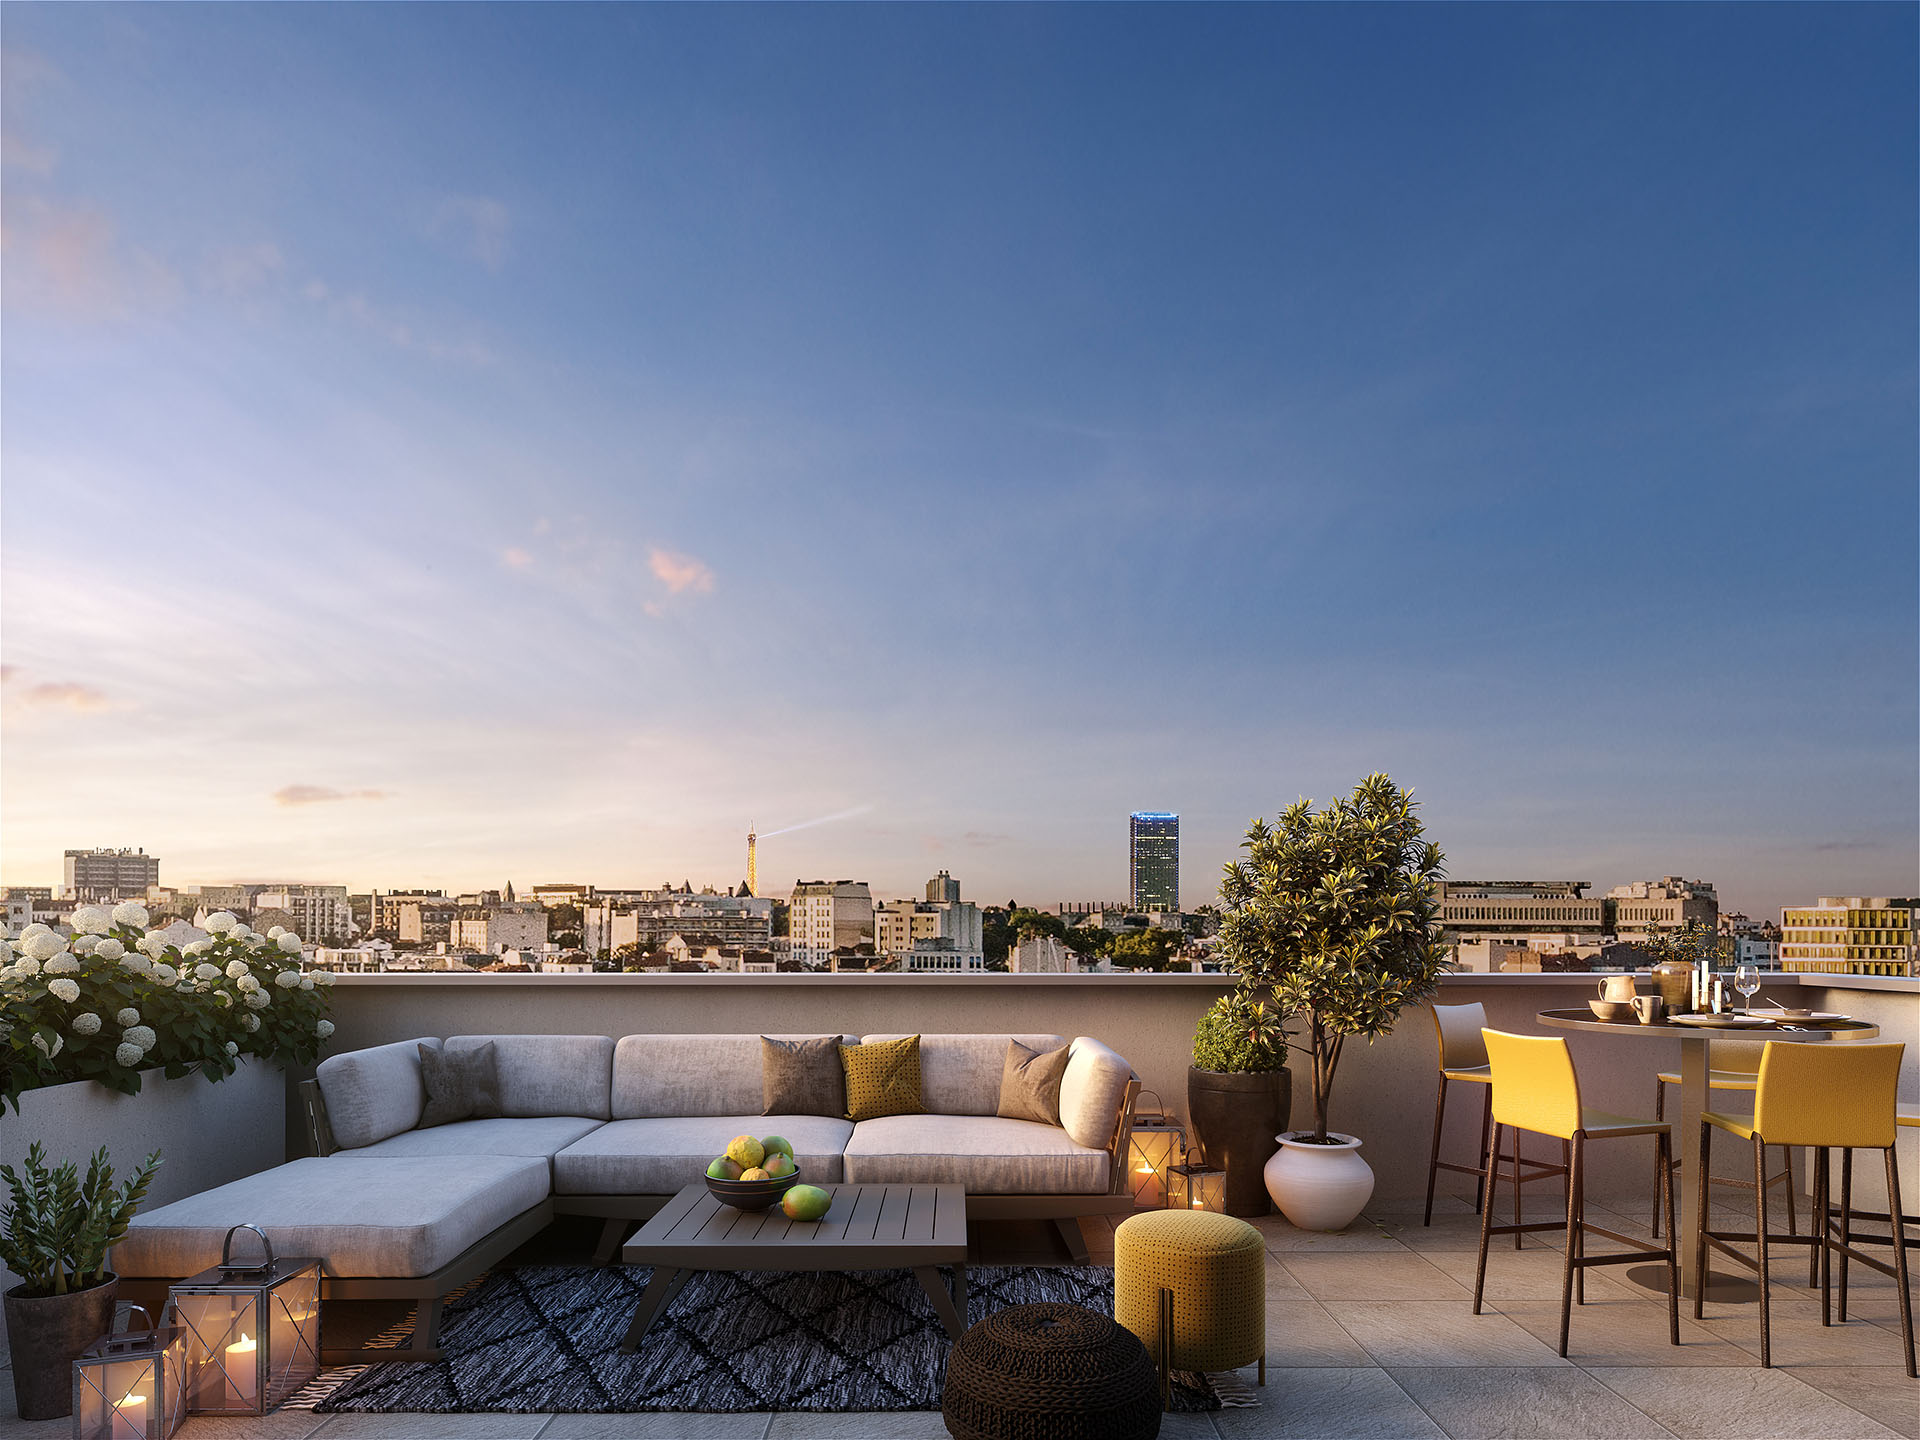 Image de synthèse 3D d'un rooftop à Paris en fin de journée